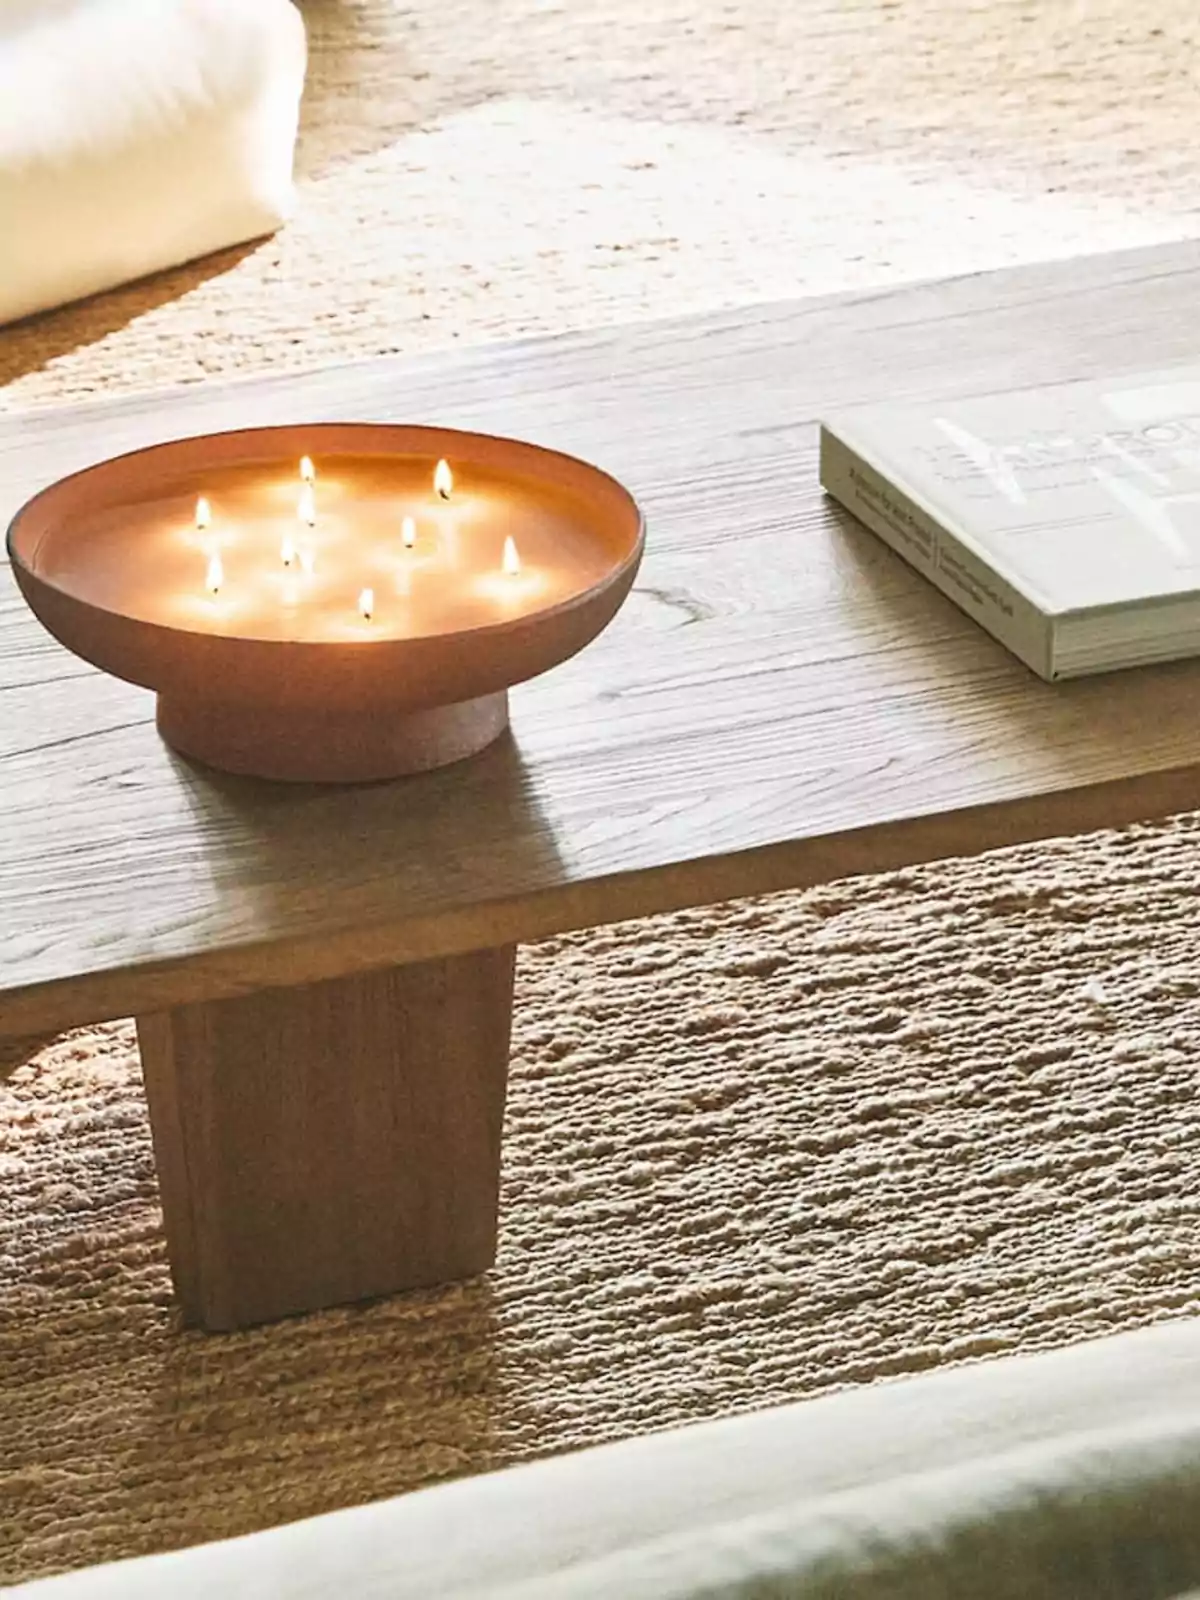 Una vela encendida con múltiples mechas y un libro sobre una mesa de madera.